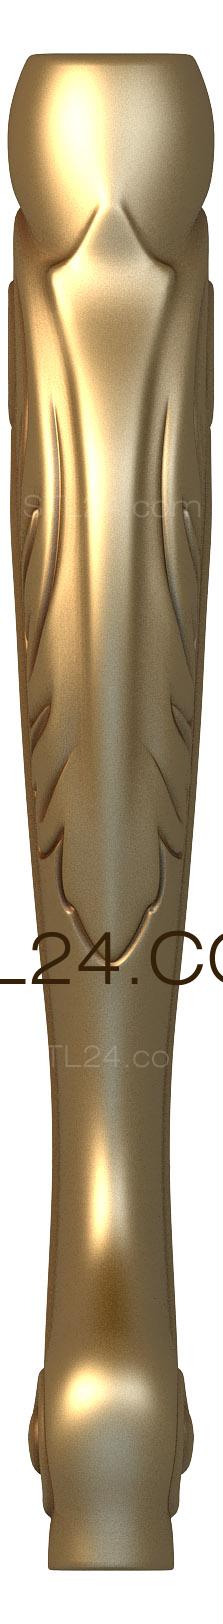 Ножки (NJ_0061) 3D модель для ЧПУ станка